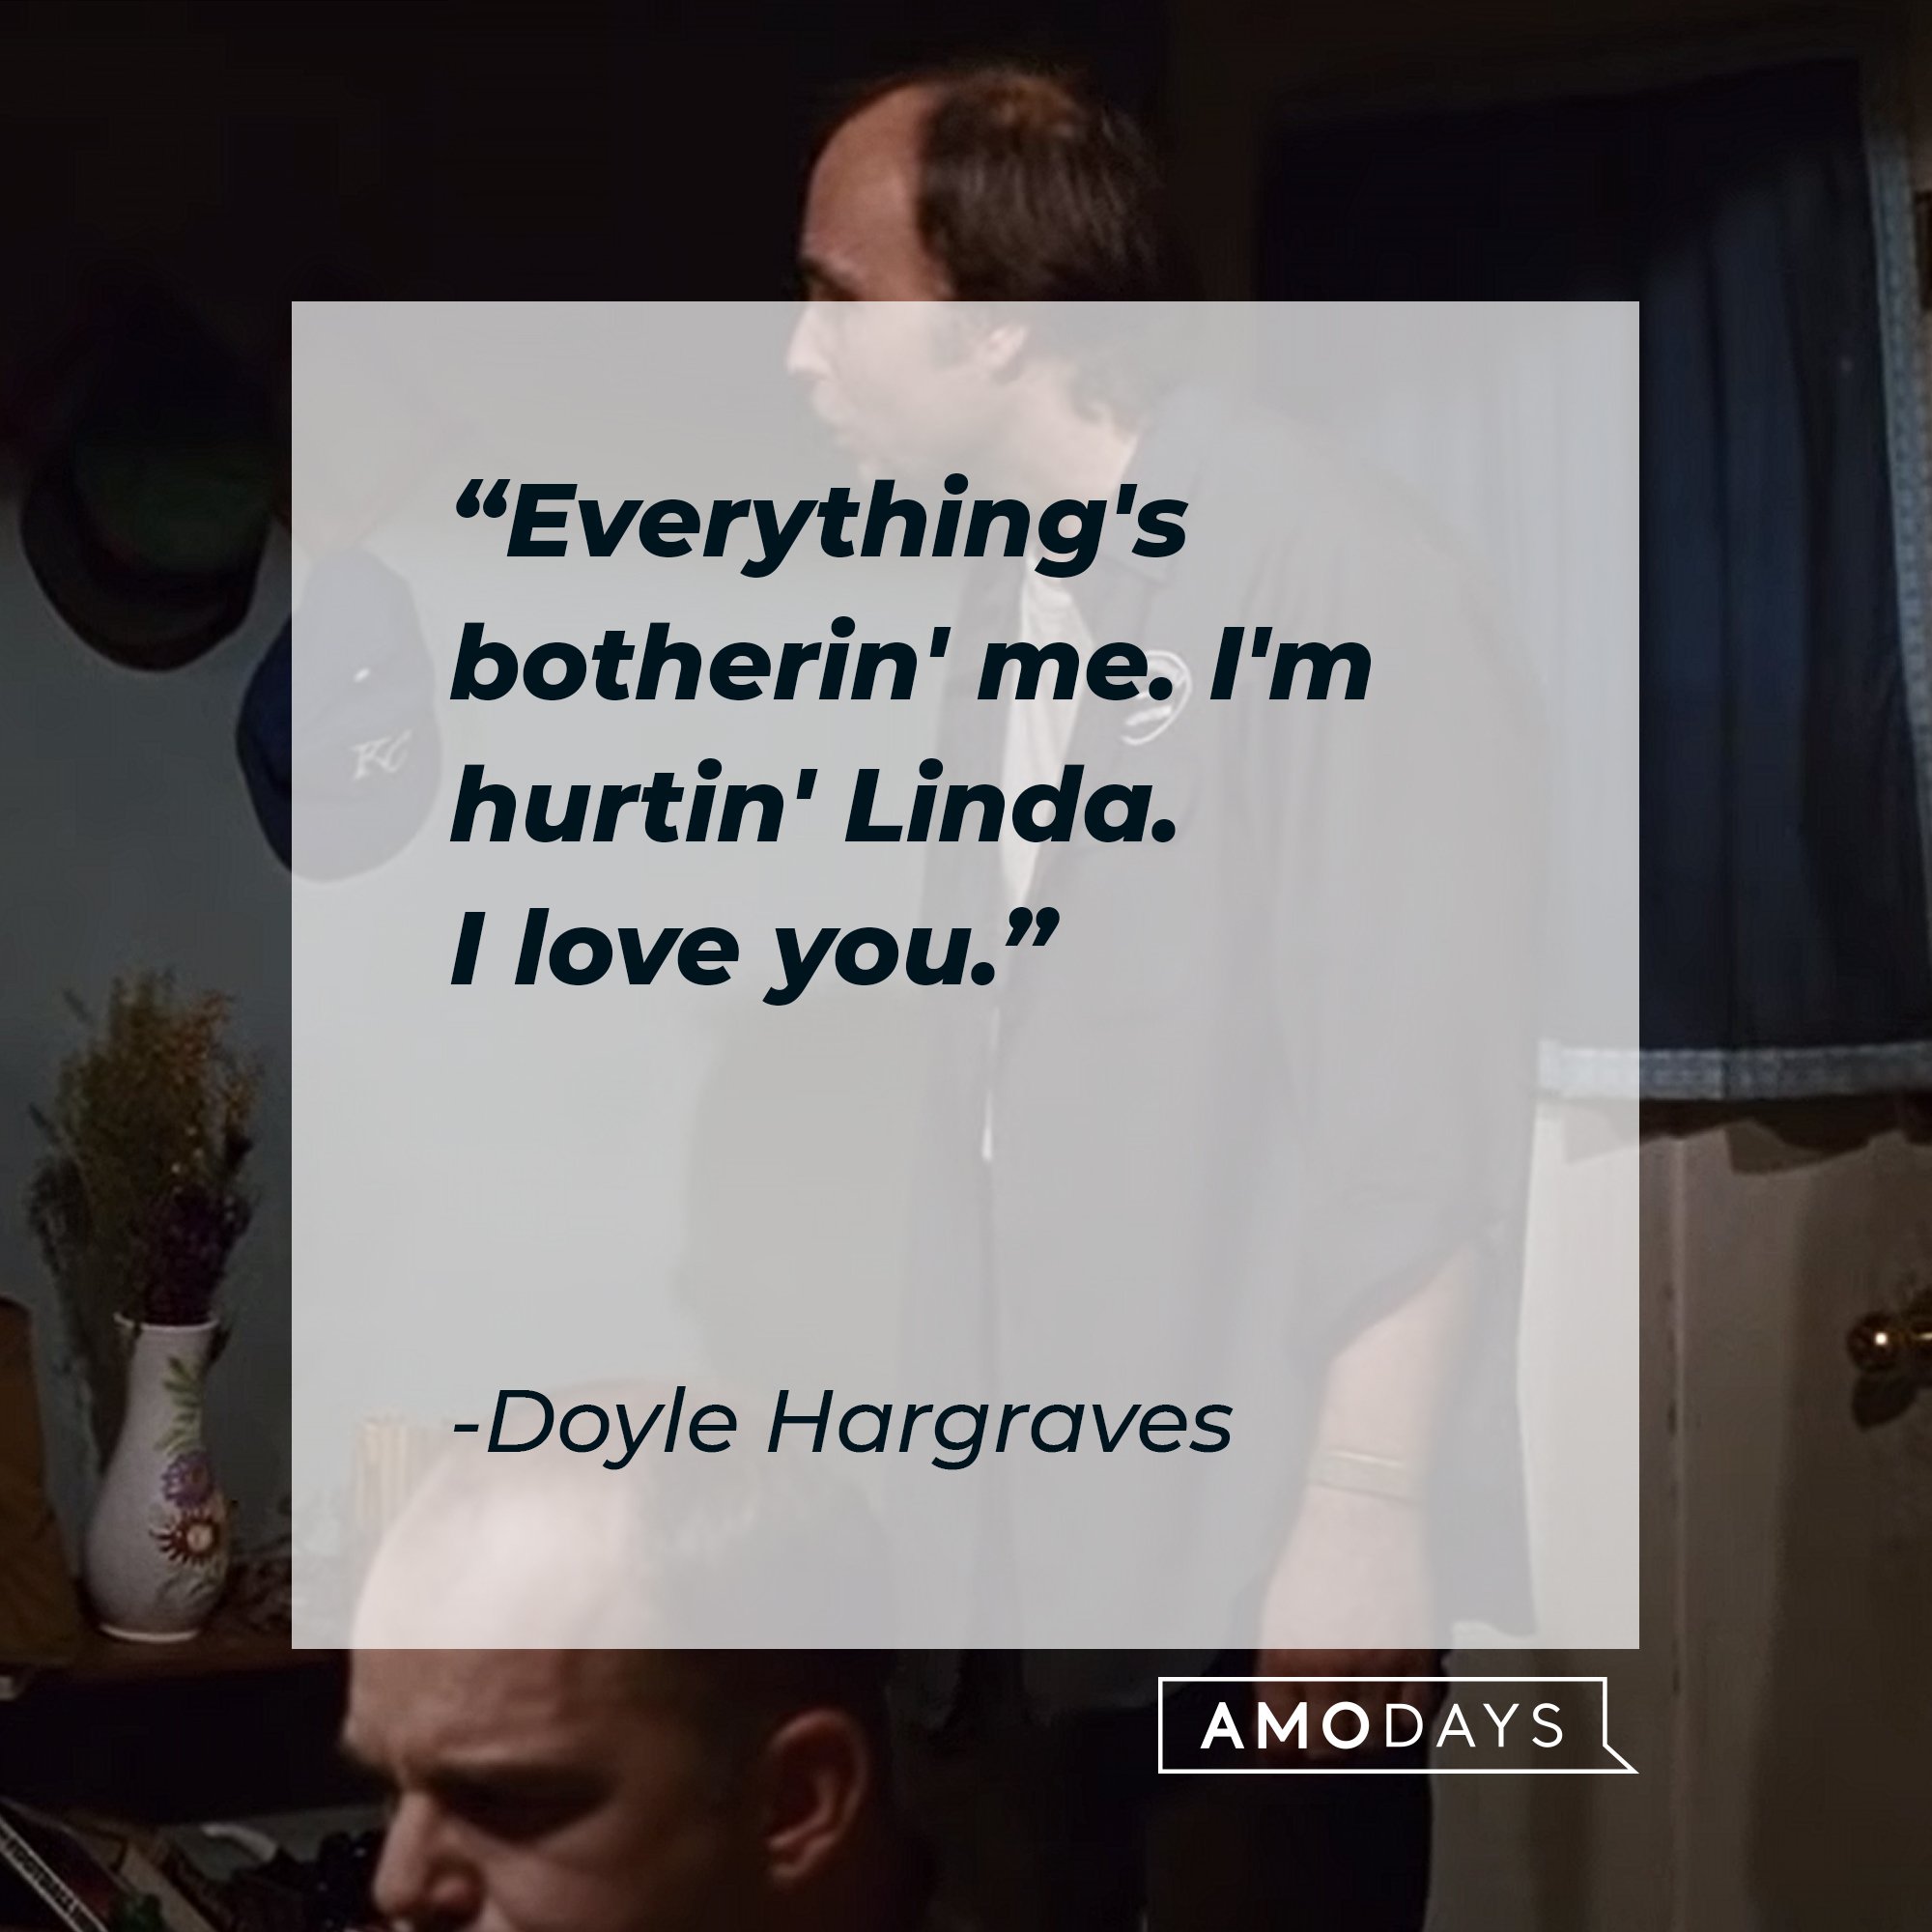 Doyle Hargraves' quote: "Everything's botherin' me. I'm hurtin' Linda. I love you."  | Image: AmoDays